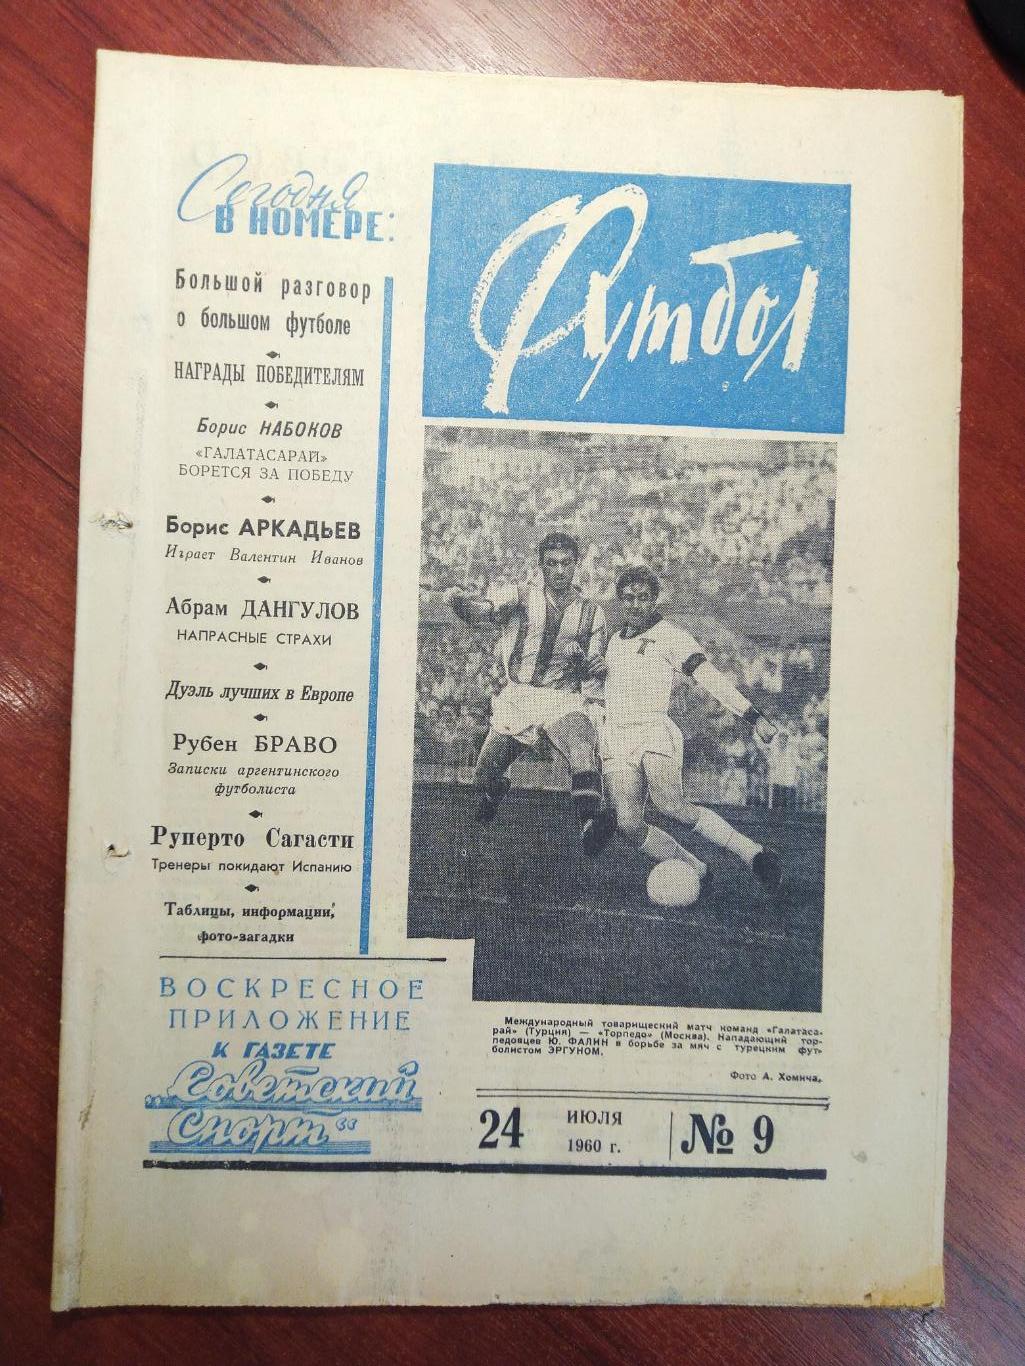 Еженедельник Футбол №9 от 24 июля 1960.Первый год выпуска!